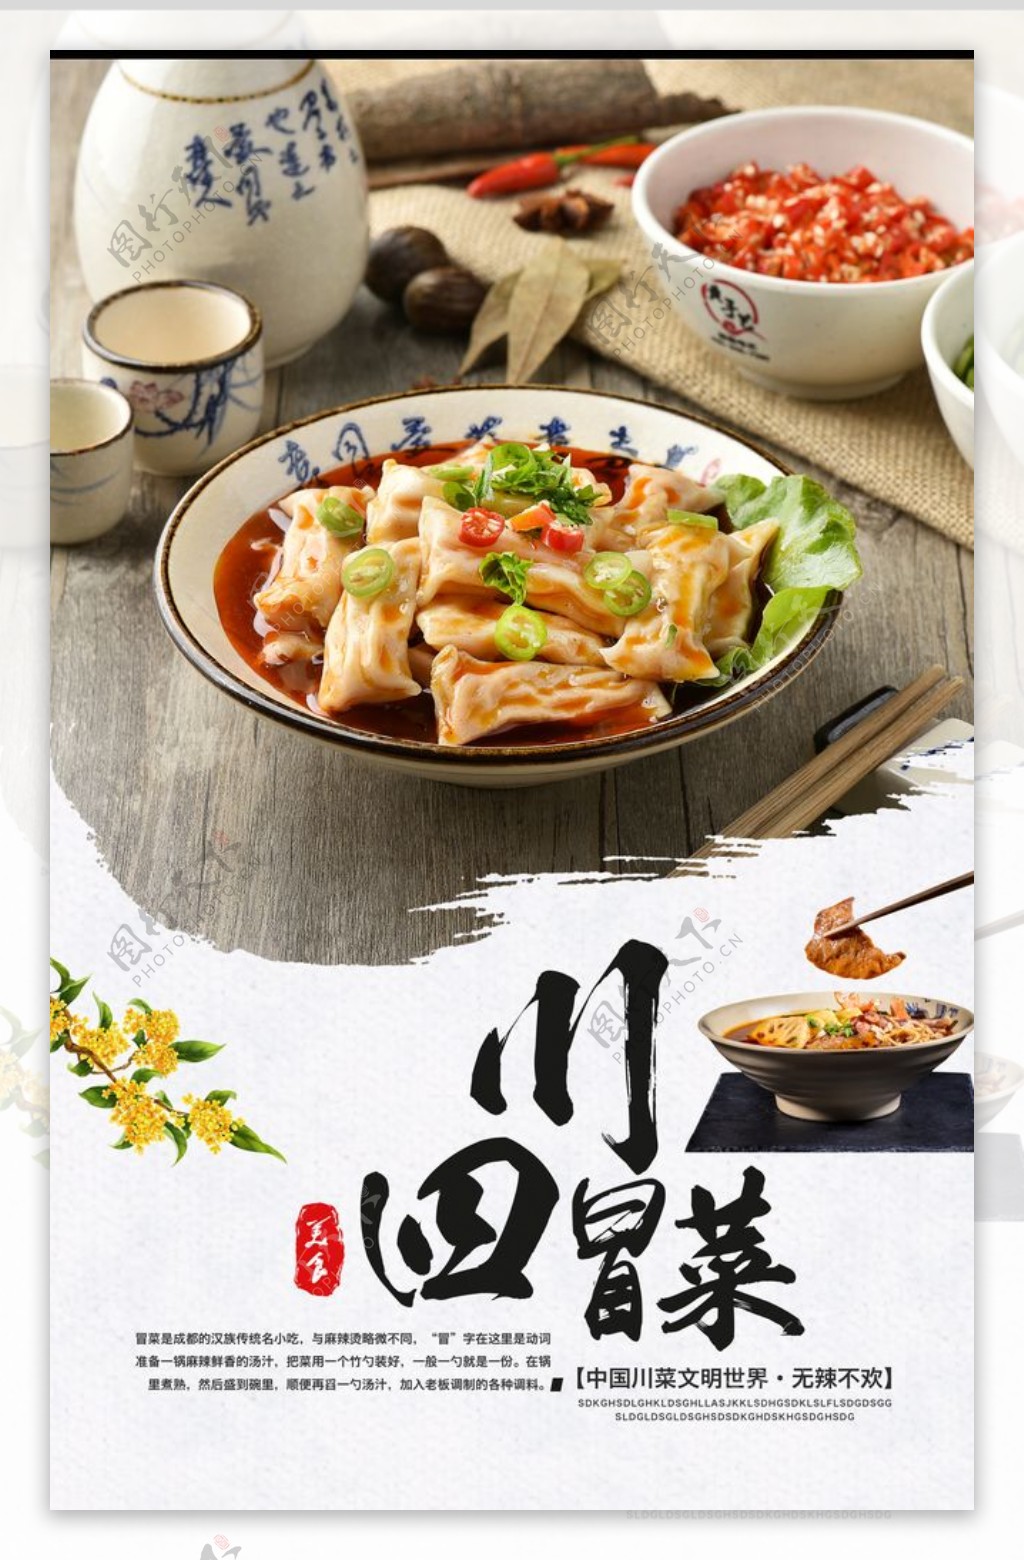 四川冒菜美食活动宣传海报图片